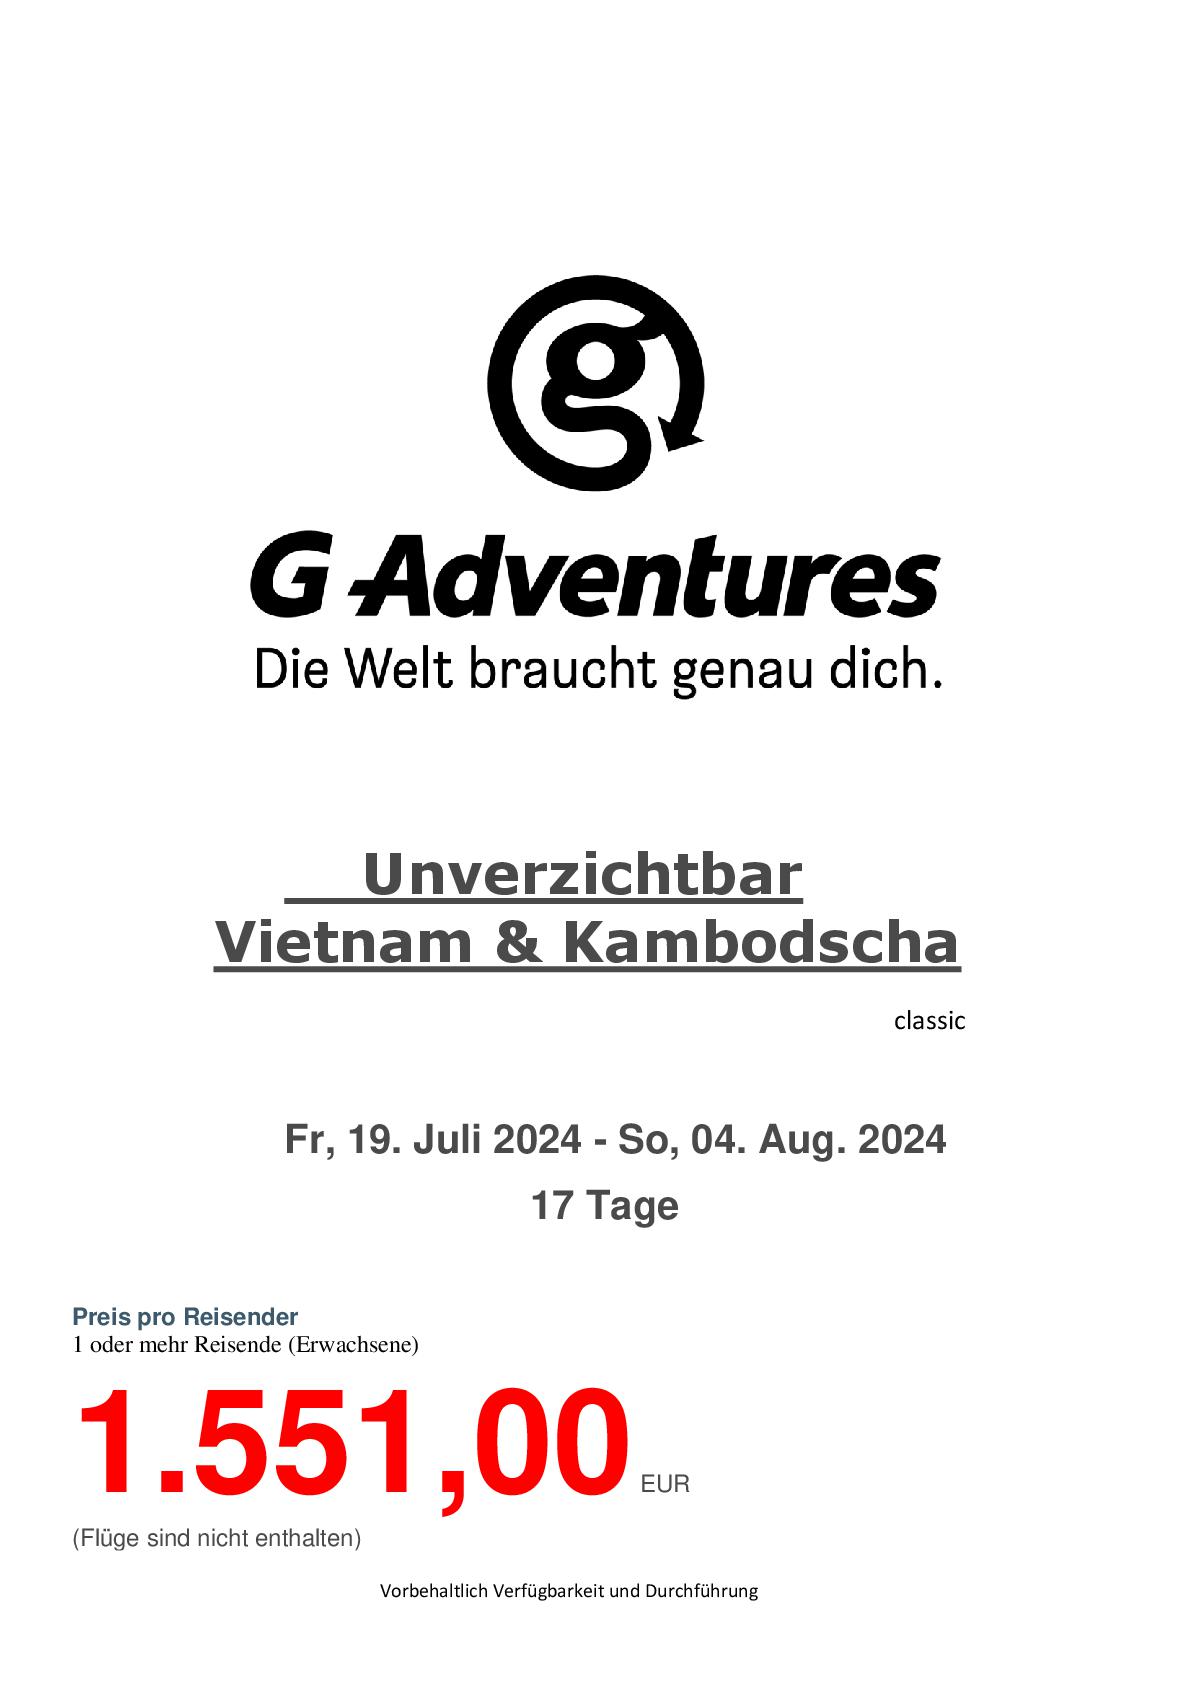 G-adventures Vietnam & Kambodscha